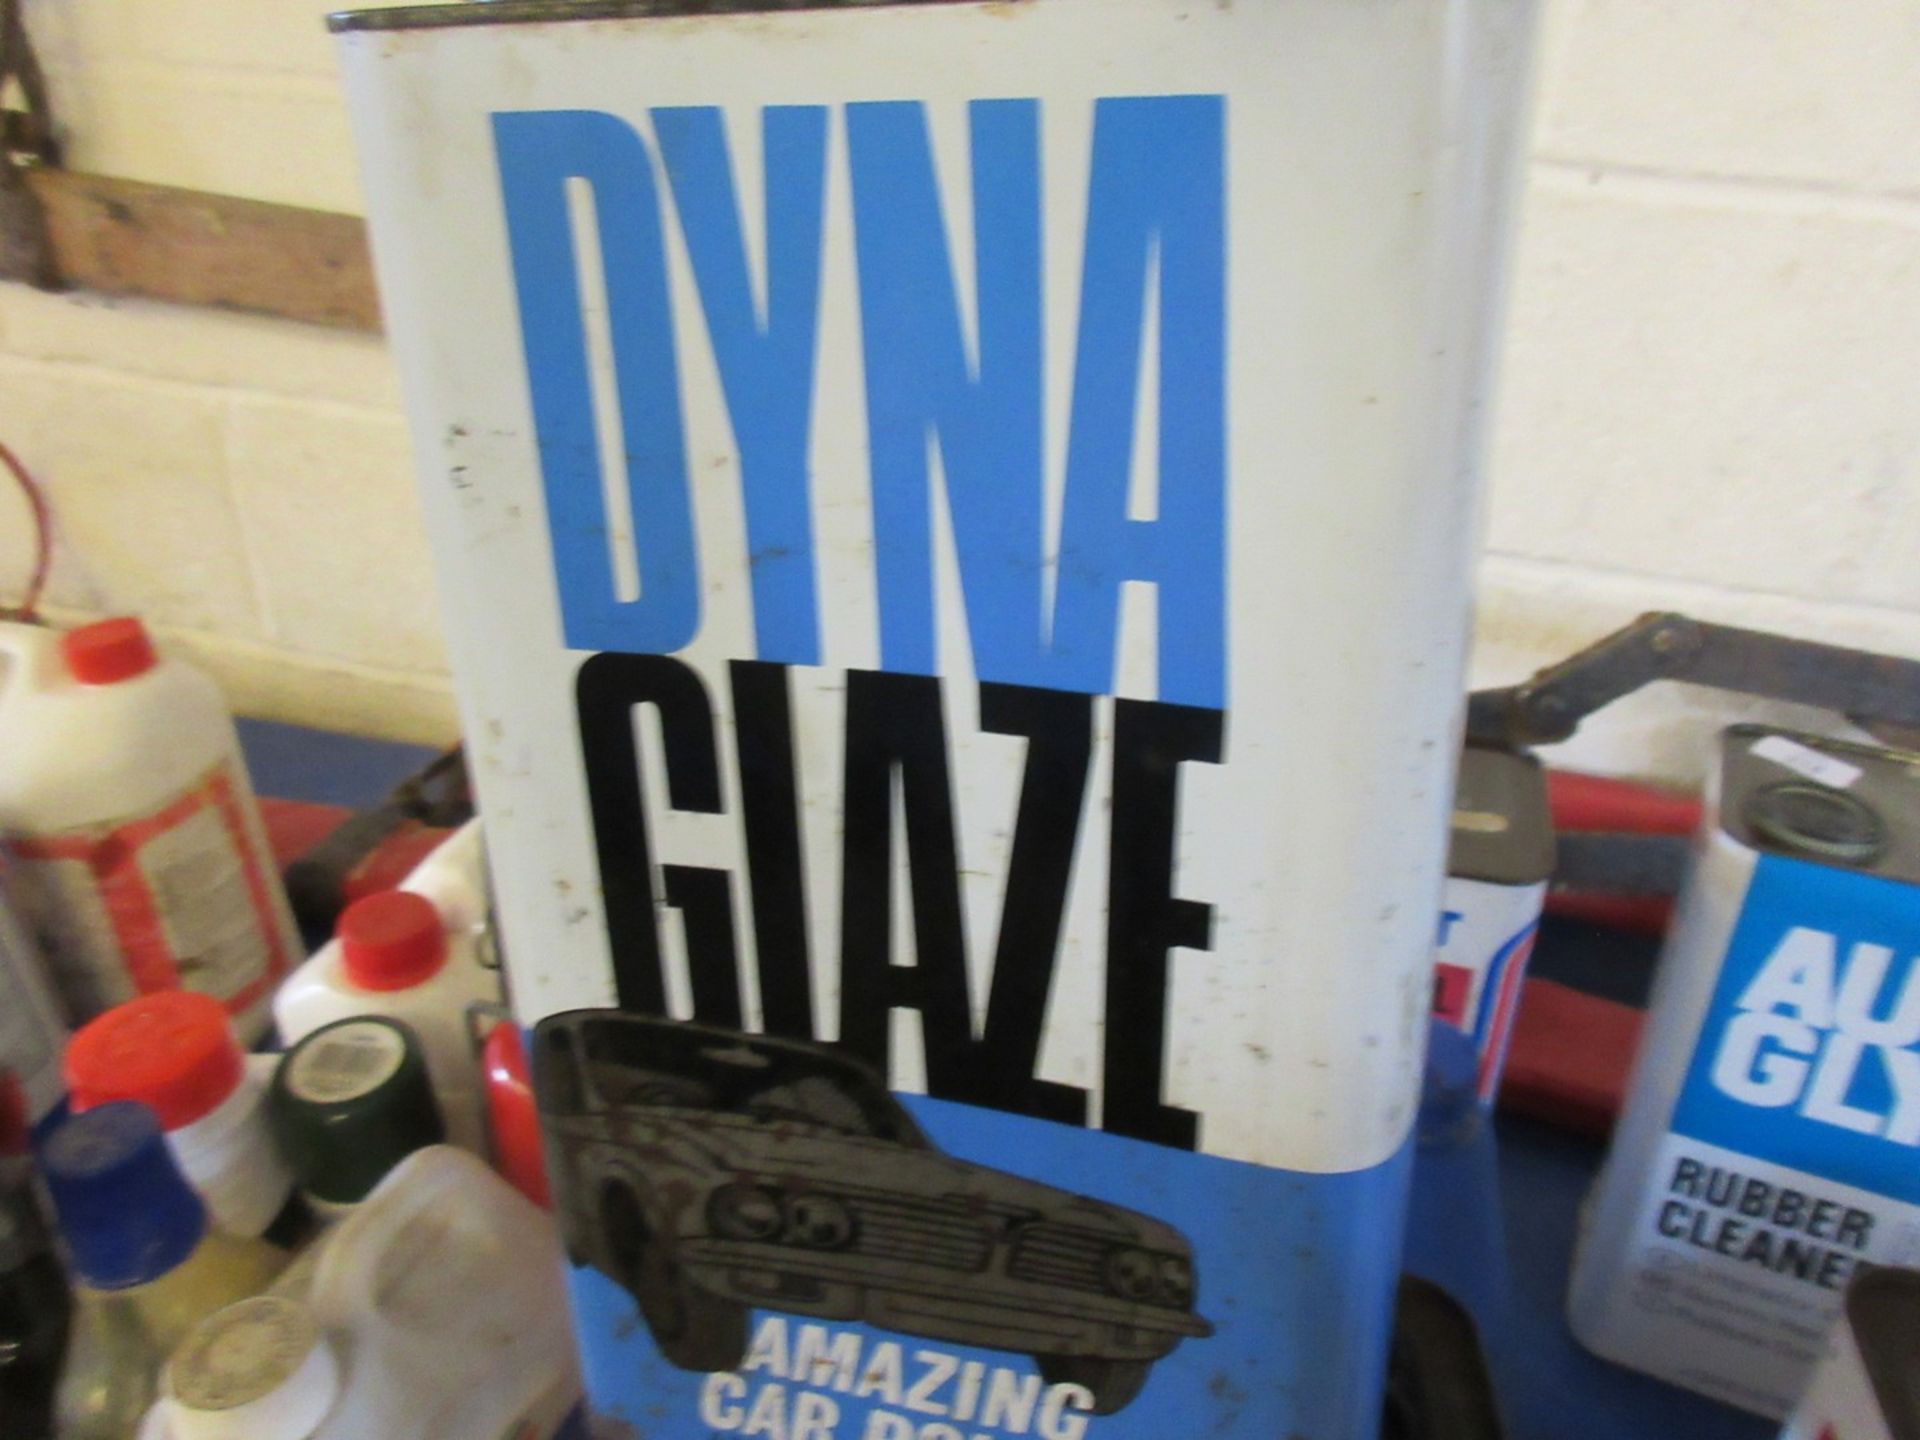 5 L tin of Dina glaze car polish